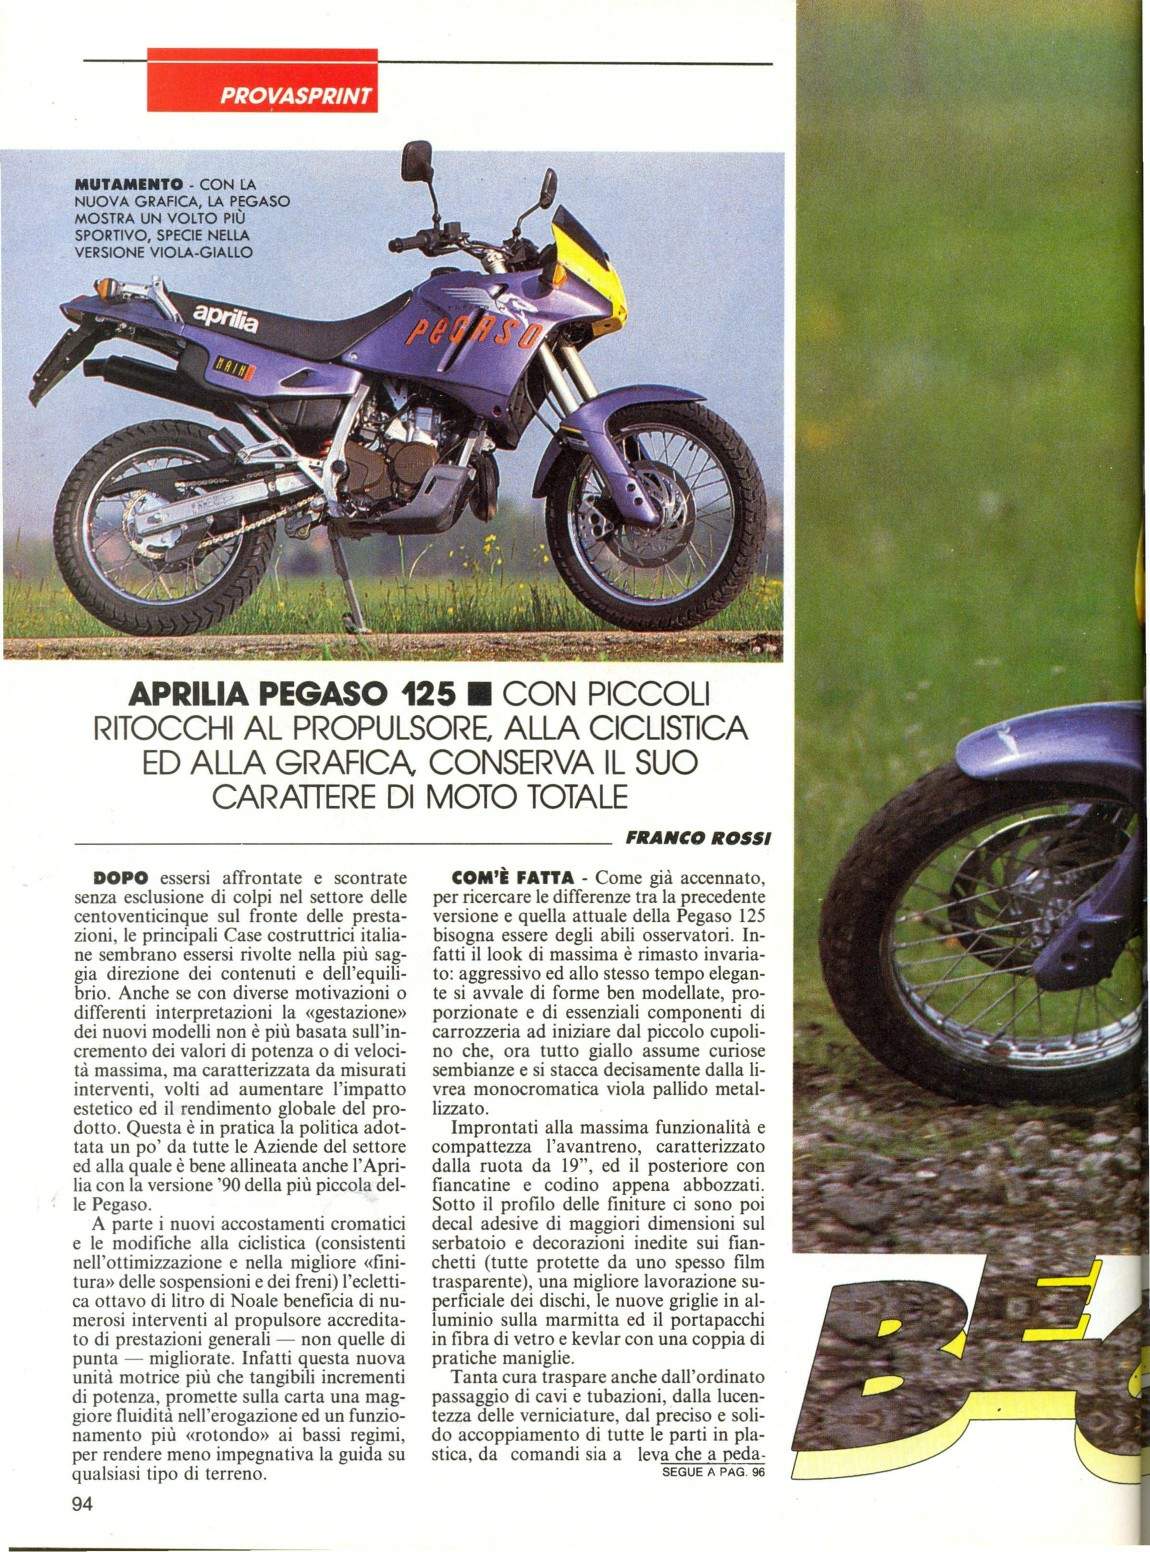 1989 Aprilia 125 Pegaso